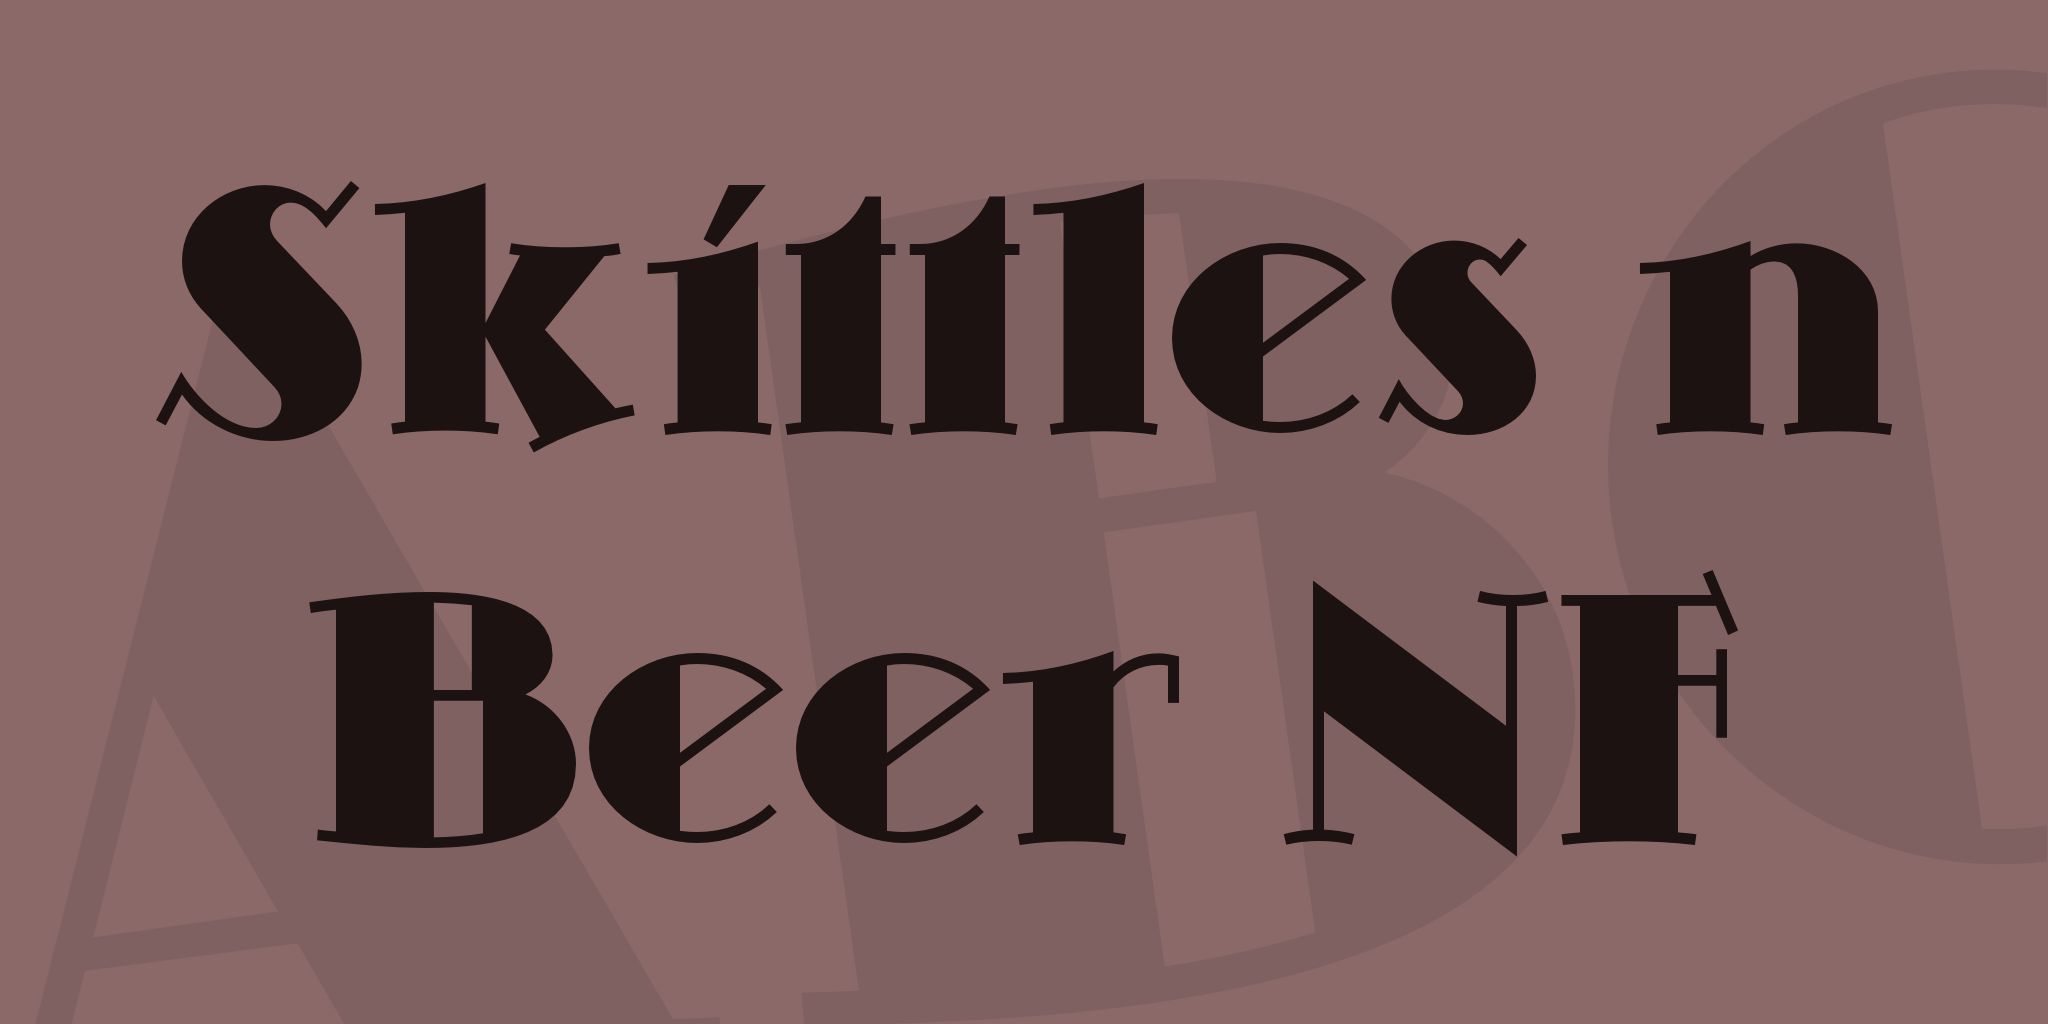 Skittles N Beer Nf